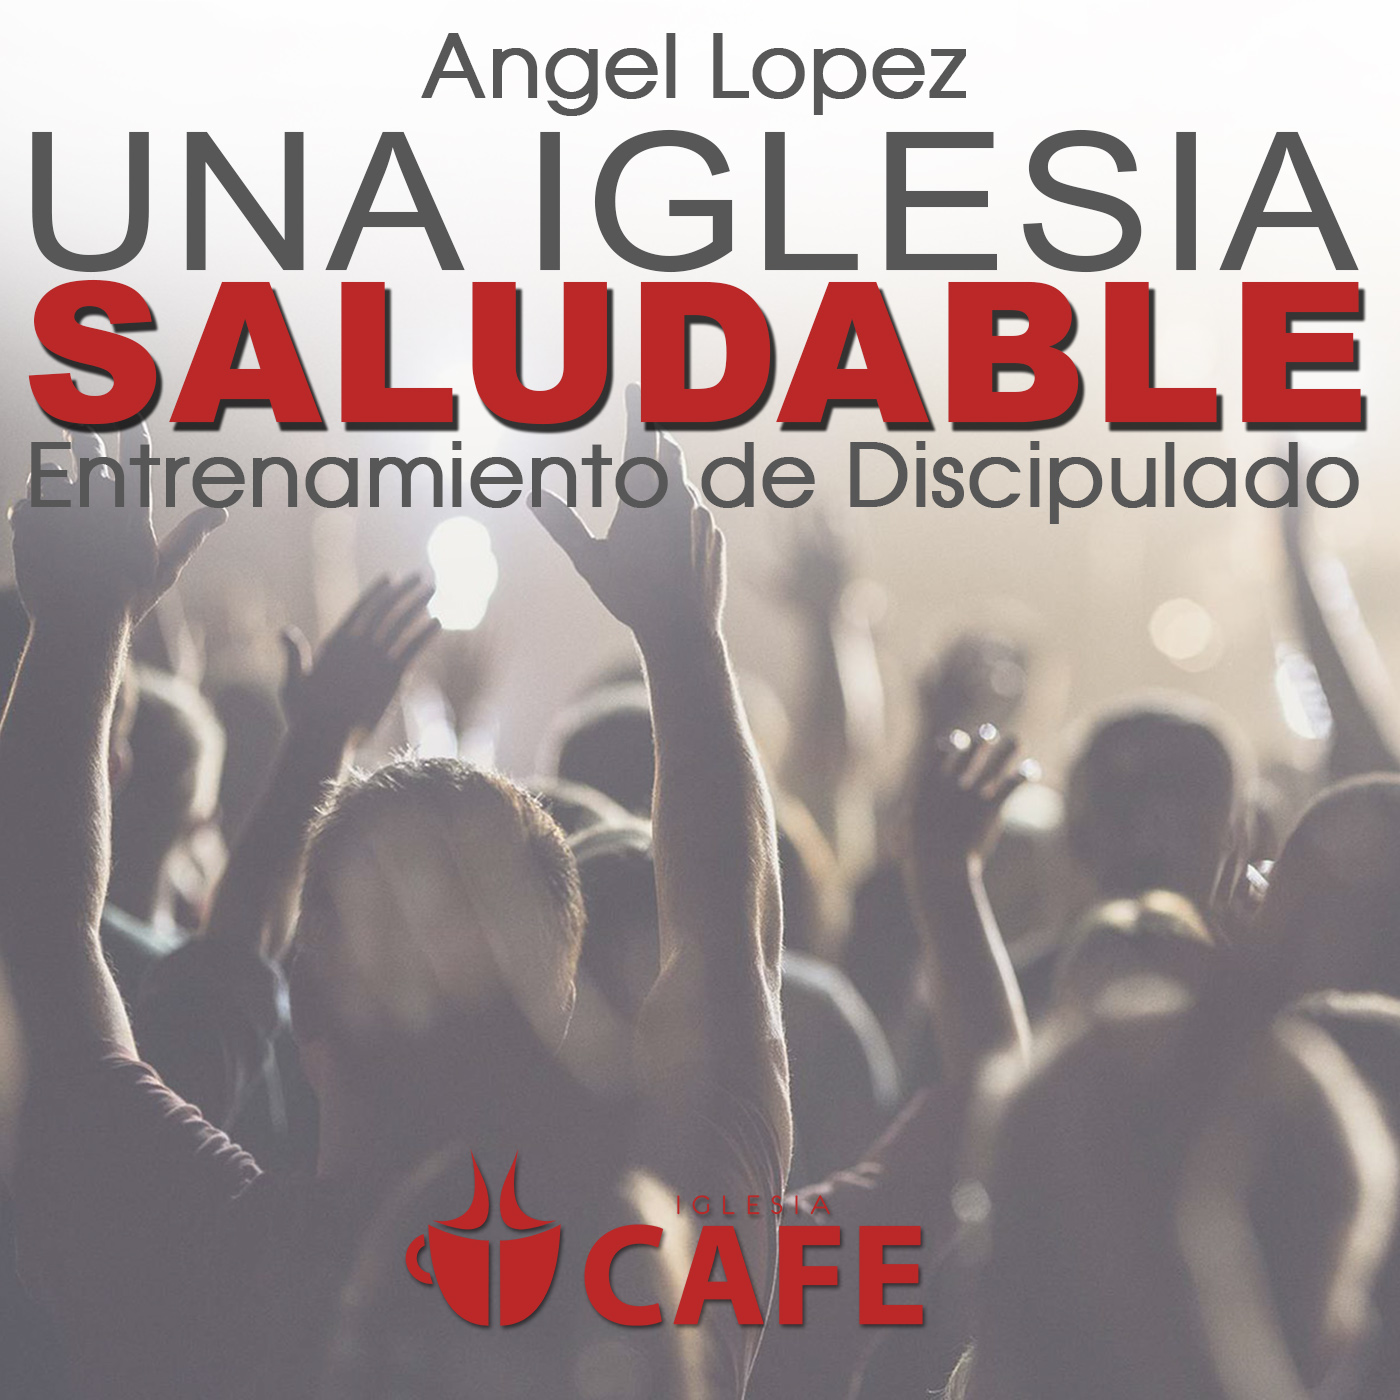 5) Angel Lopez - La Unidad de la Iglesia Saludable